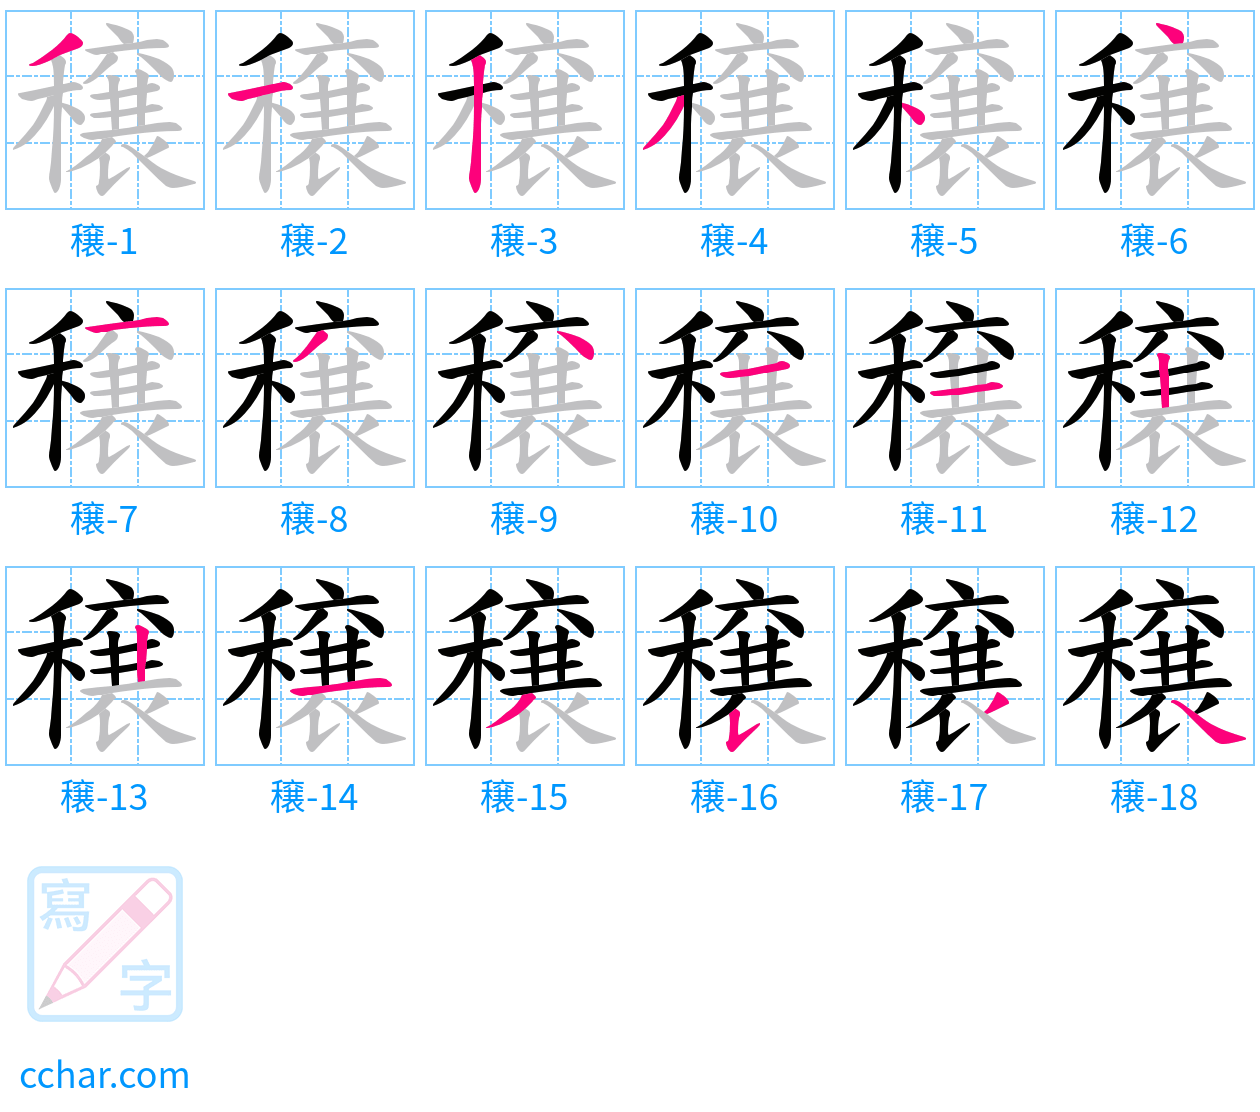 穣 stroke order step-by-step diagram